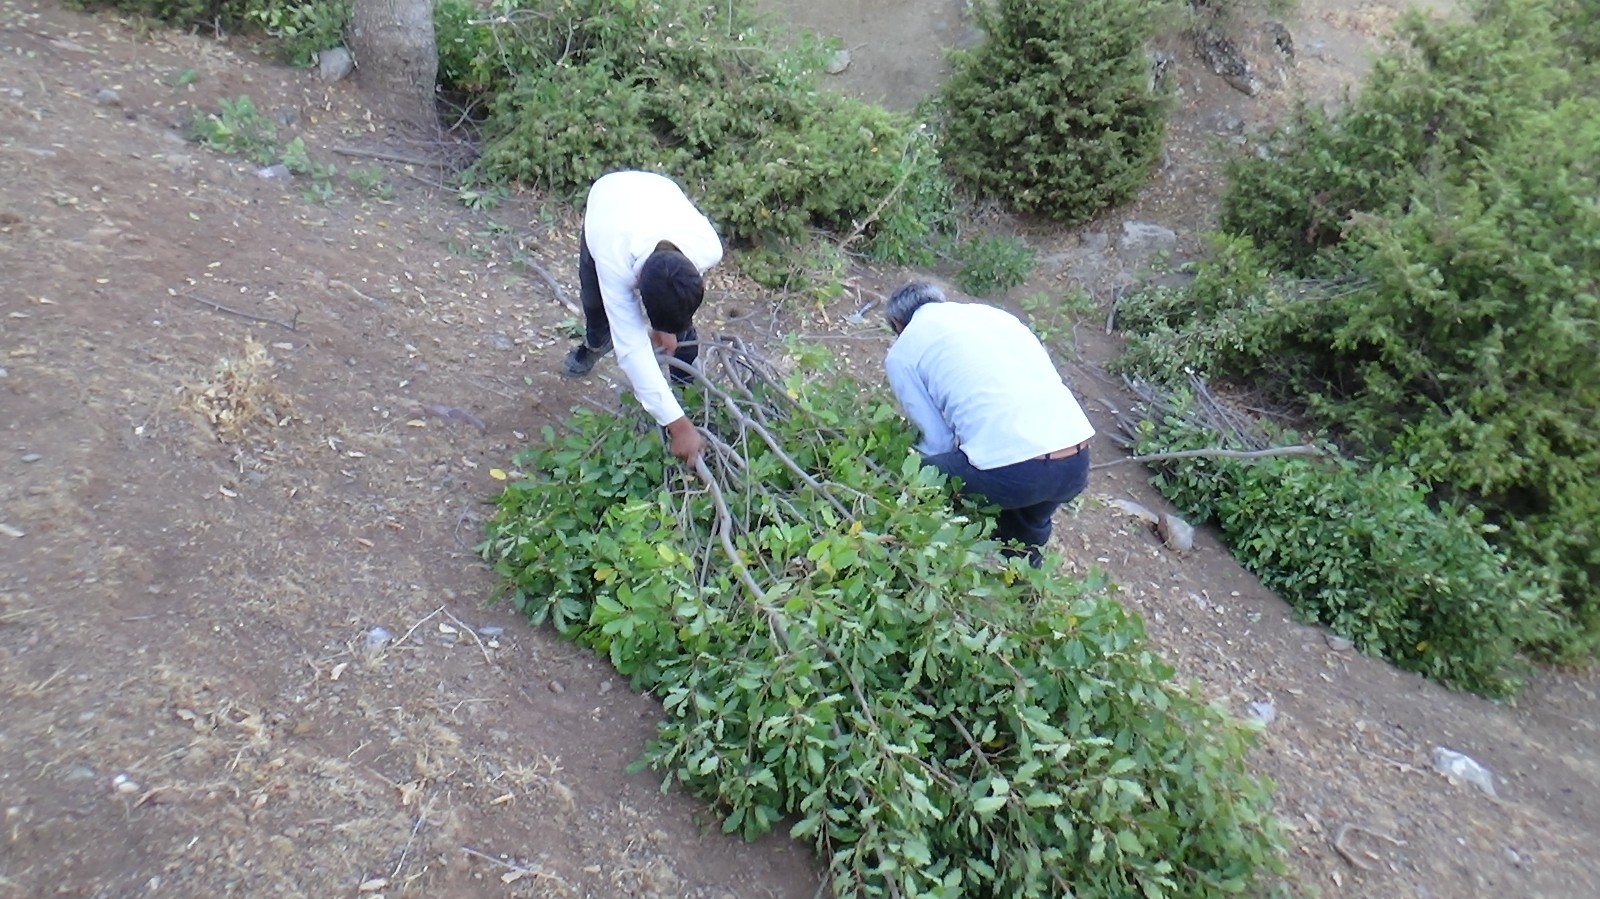 Kuraklıktan dolayı saman biriktiremeyen besiciler, meşe yaprağı stokluyor #batman